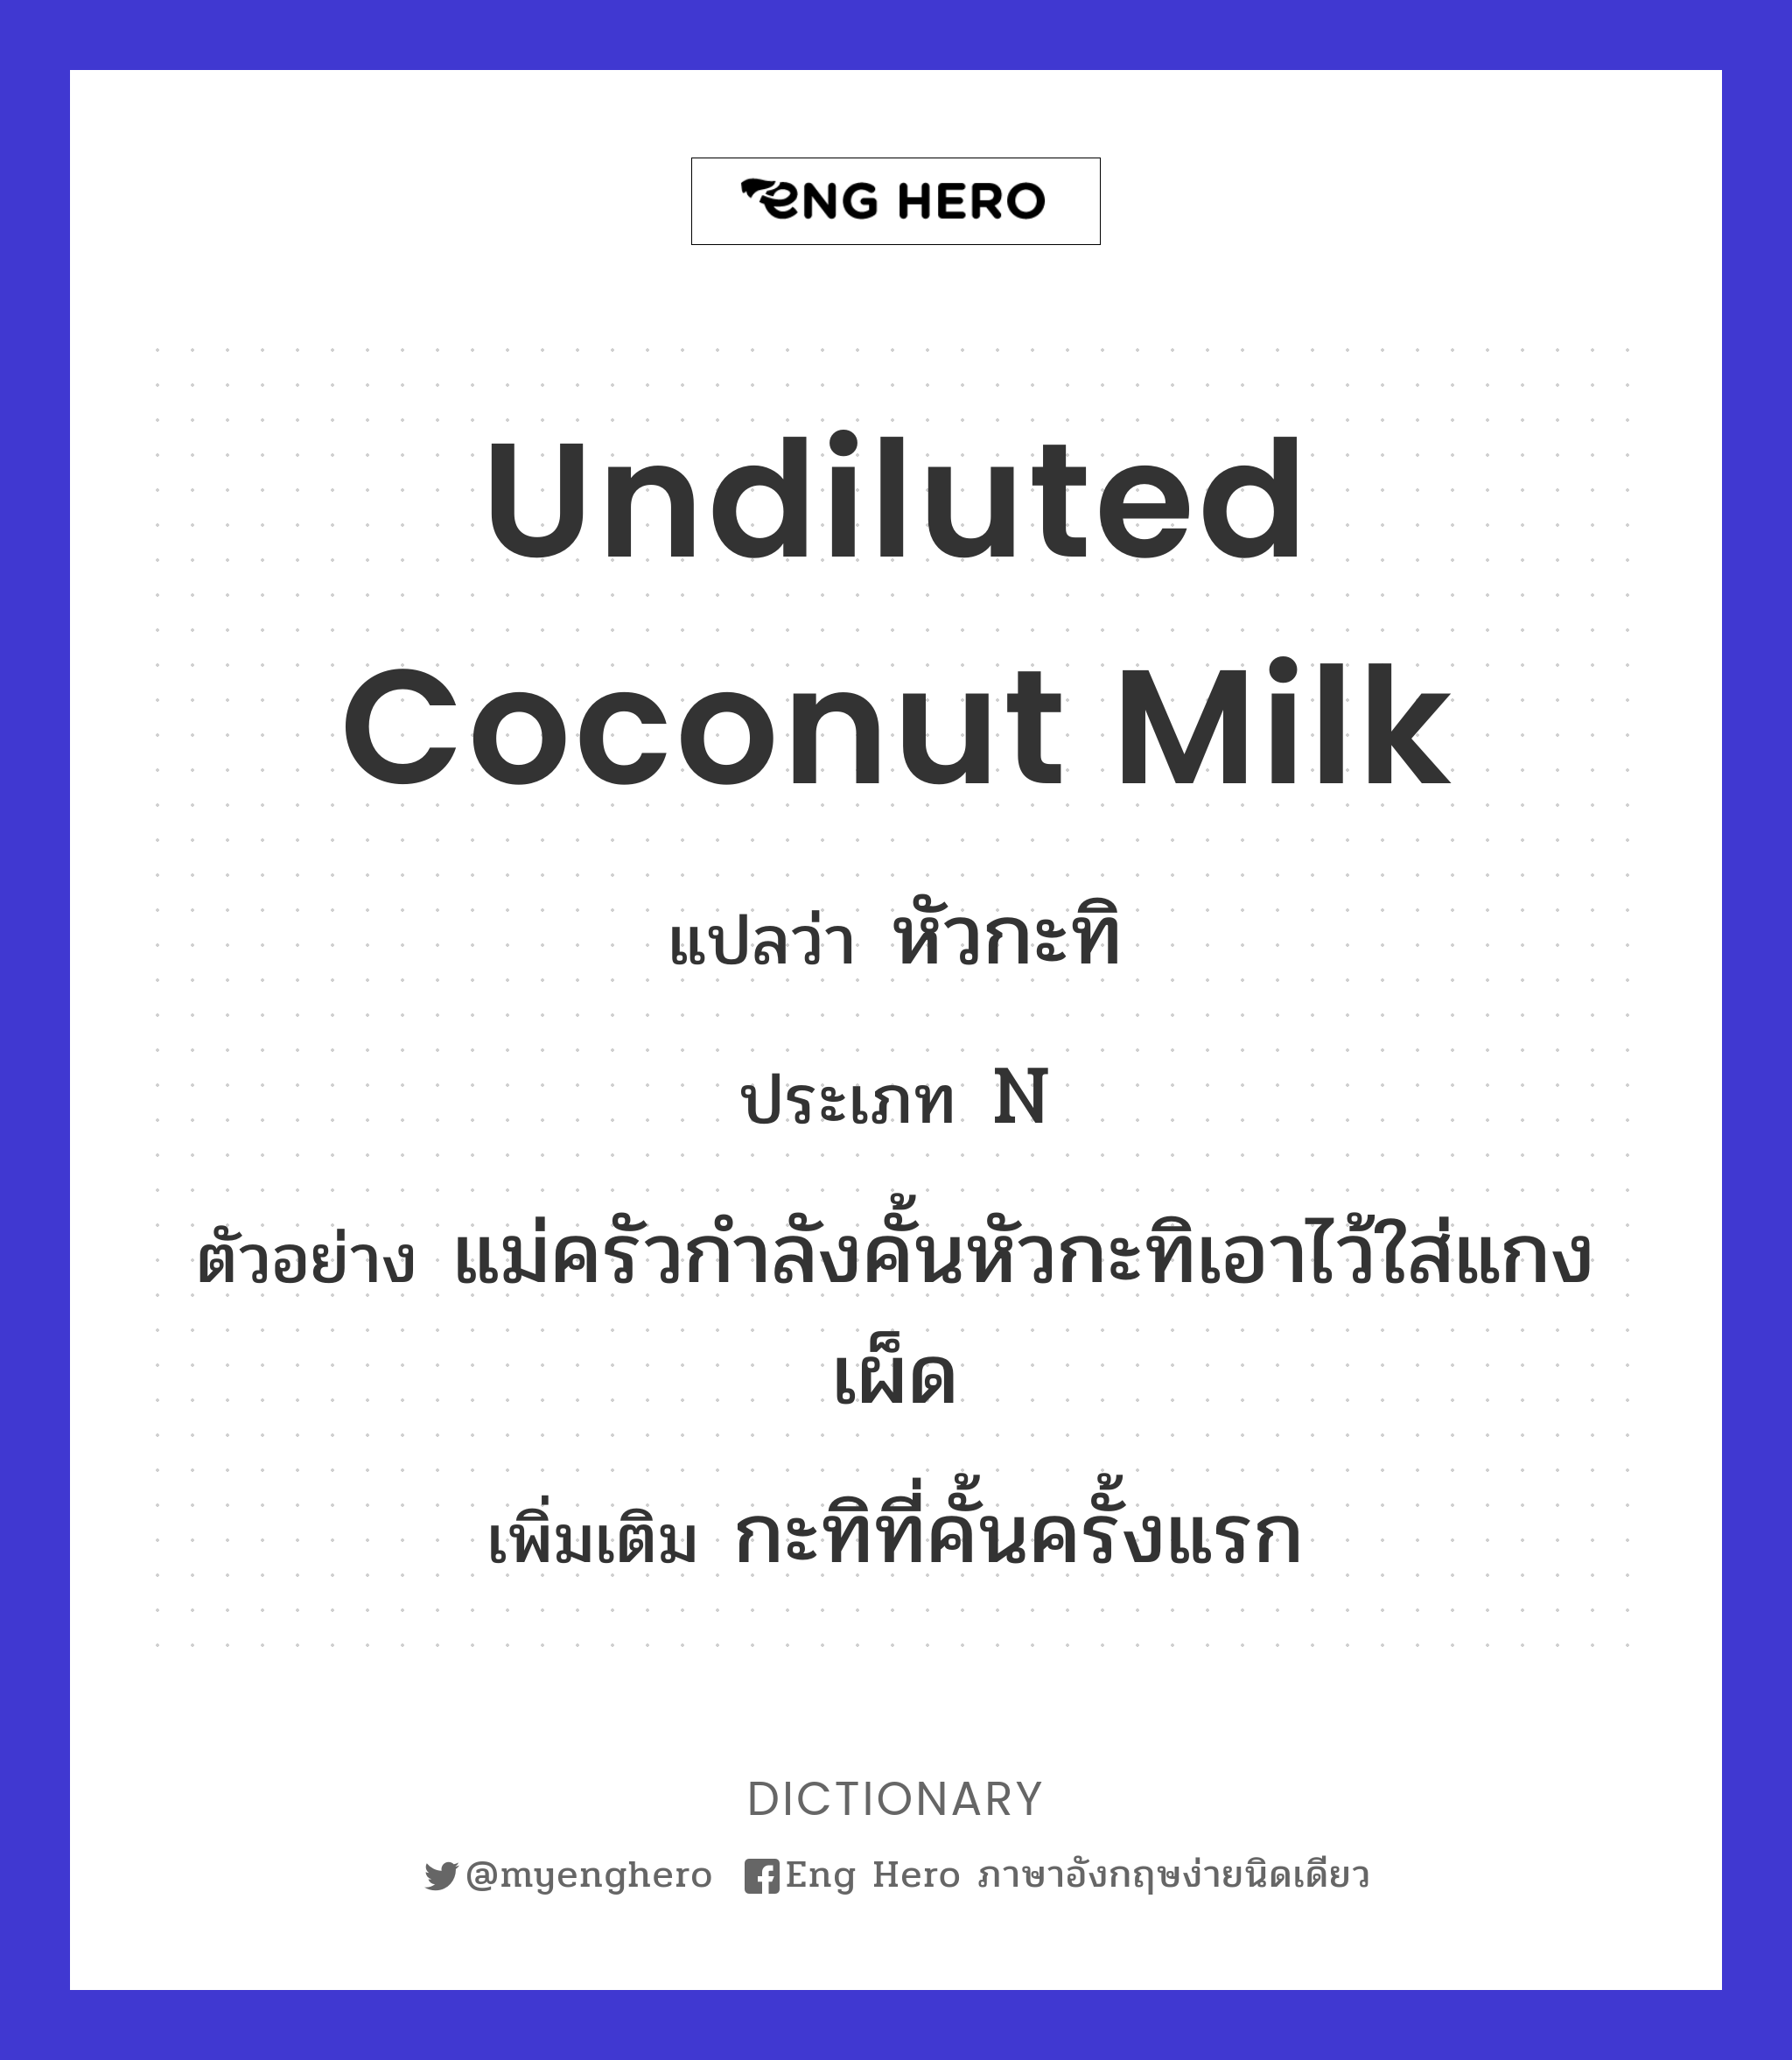 undiluted coconut milk